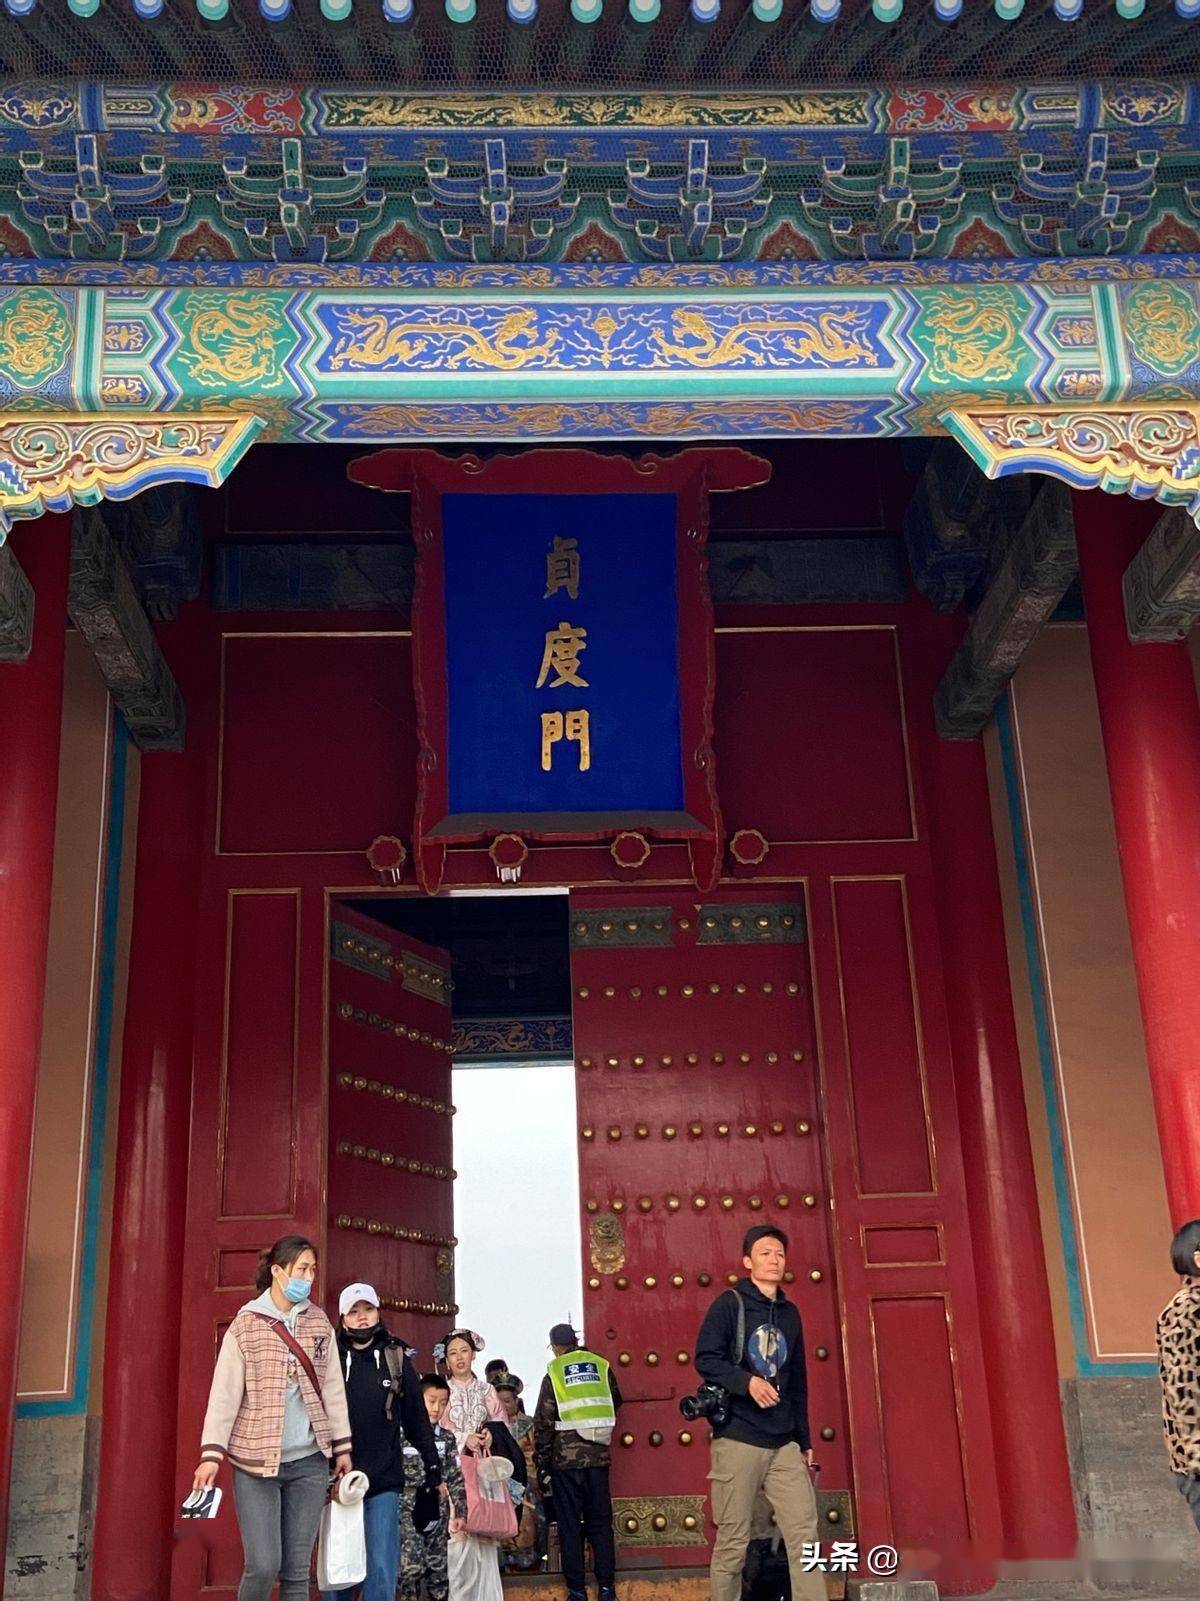 贞度门,太和门的侧门,是清场时从东华门出的游客需要走的出口